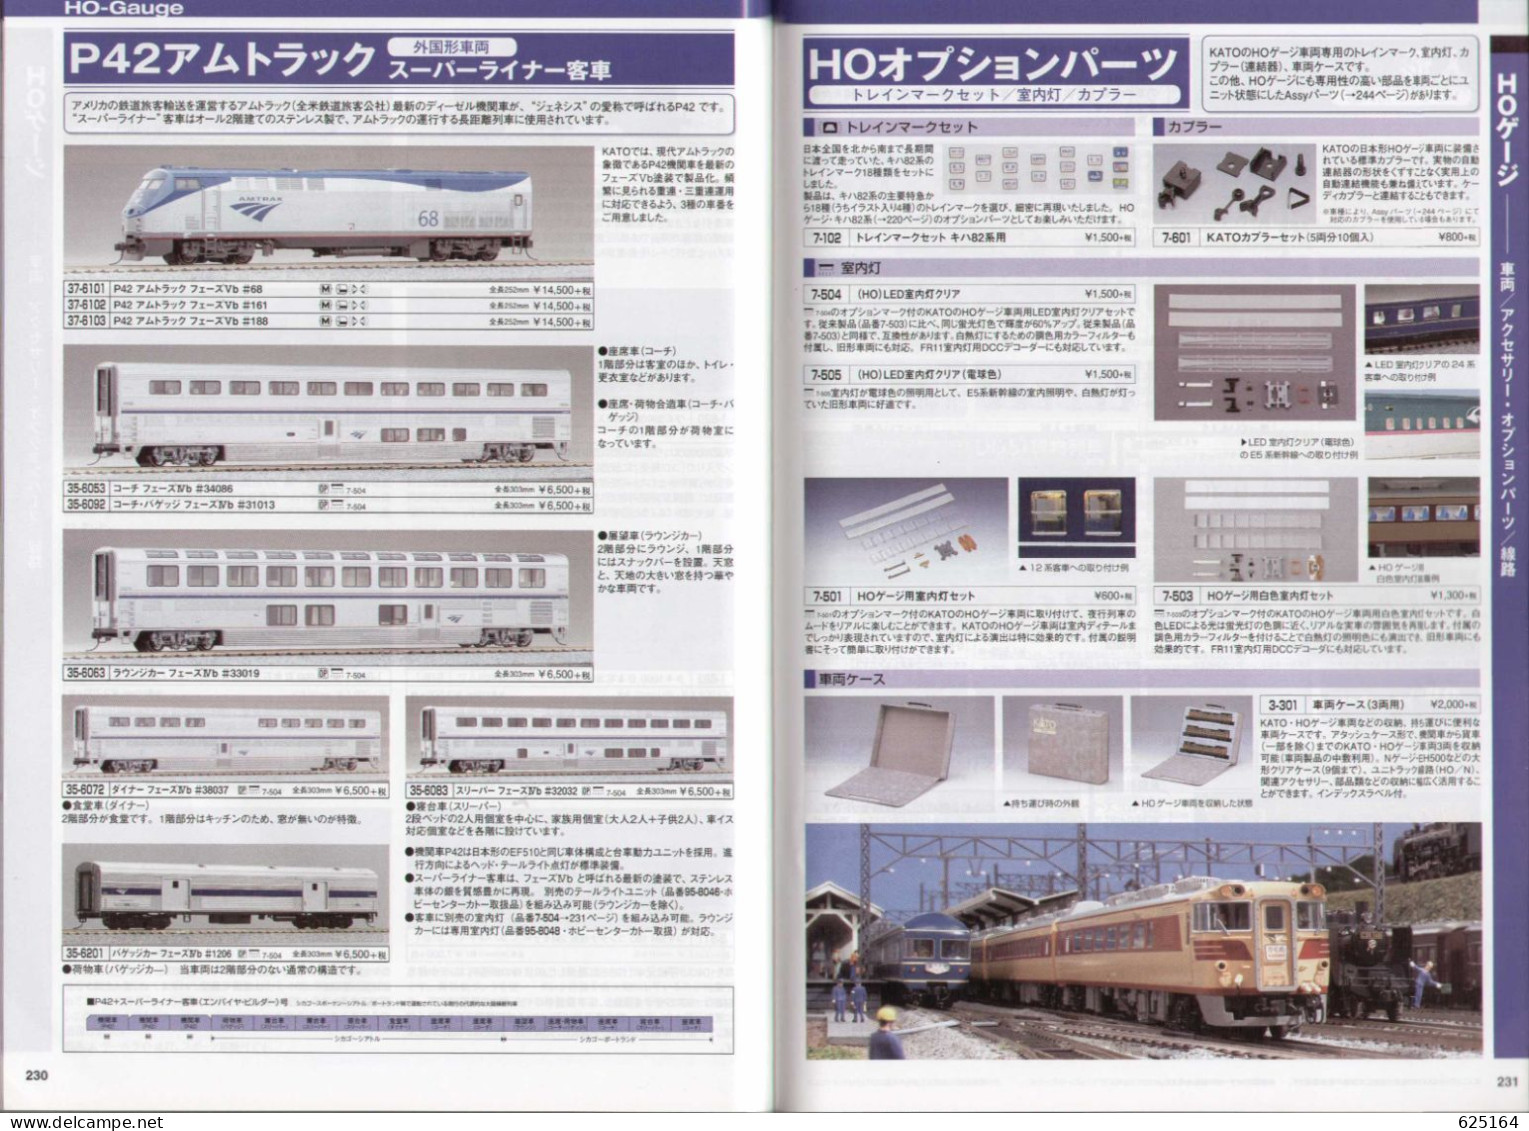 catalogue KATO 2015 50° PRECISION RAILROAD MODELS - HO 1:87 - N 1:160 - en japonais avec quelques sous-titres anglais